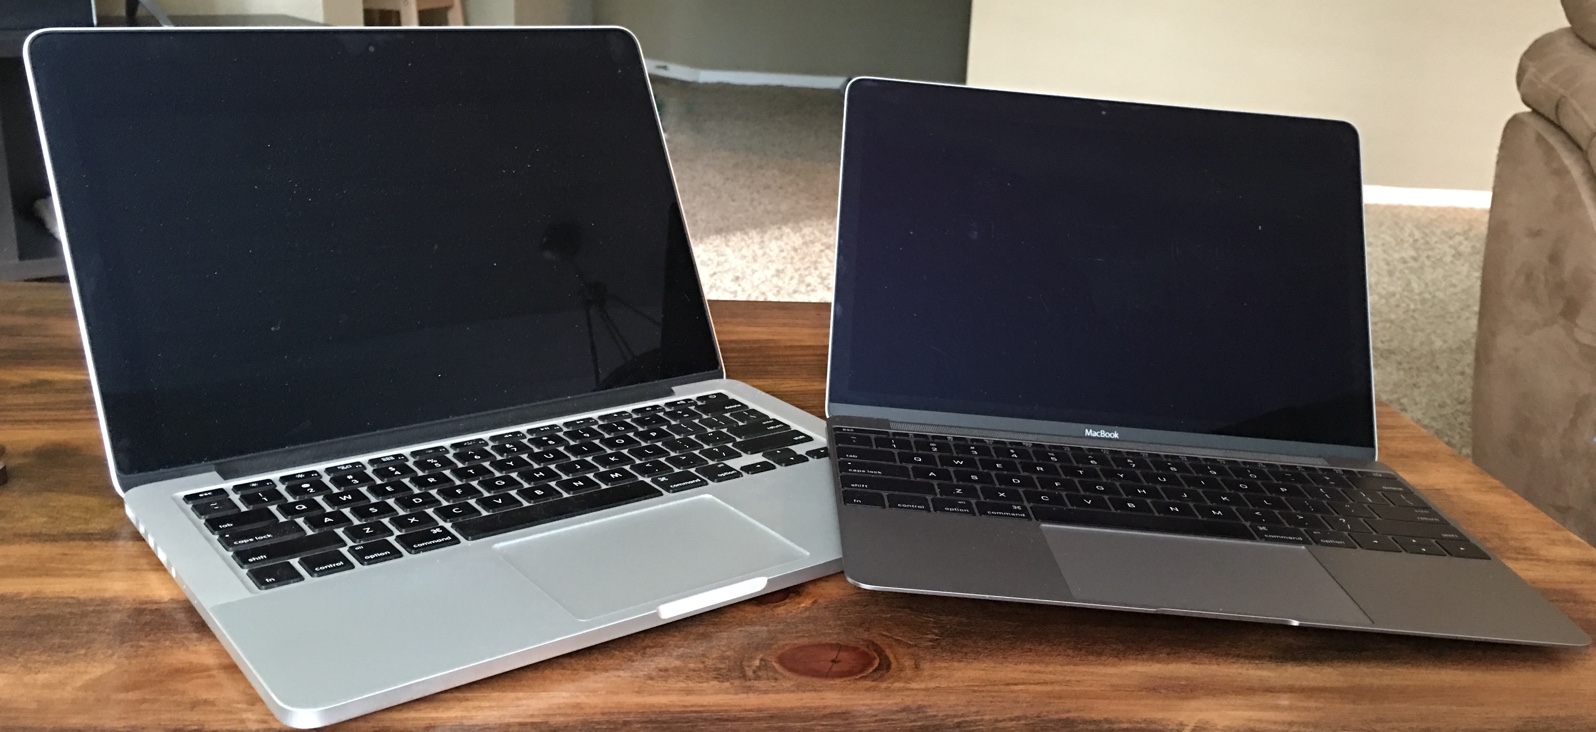 Dịch vụ thay màn hình macbook Pro A1502 2015 13.3 inch – 5.5tr